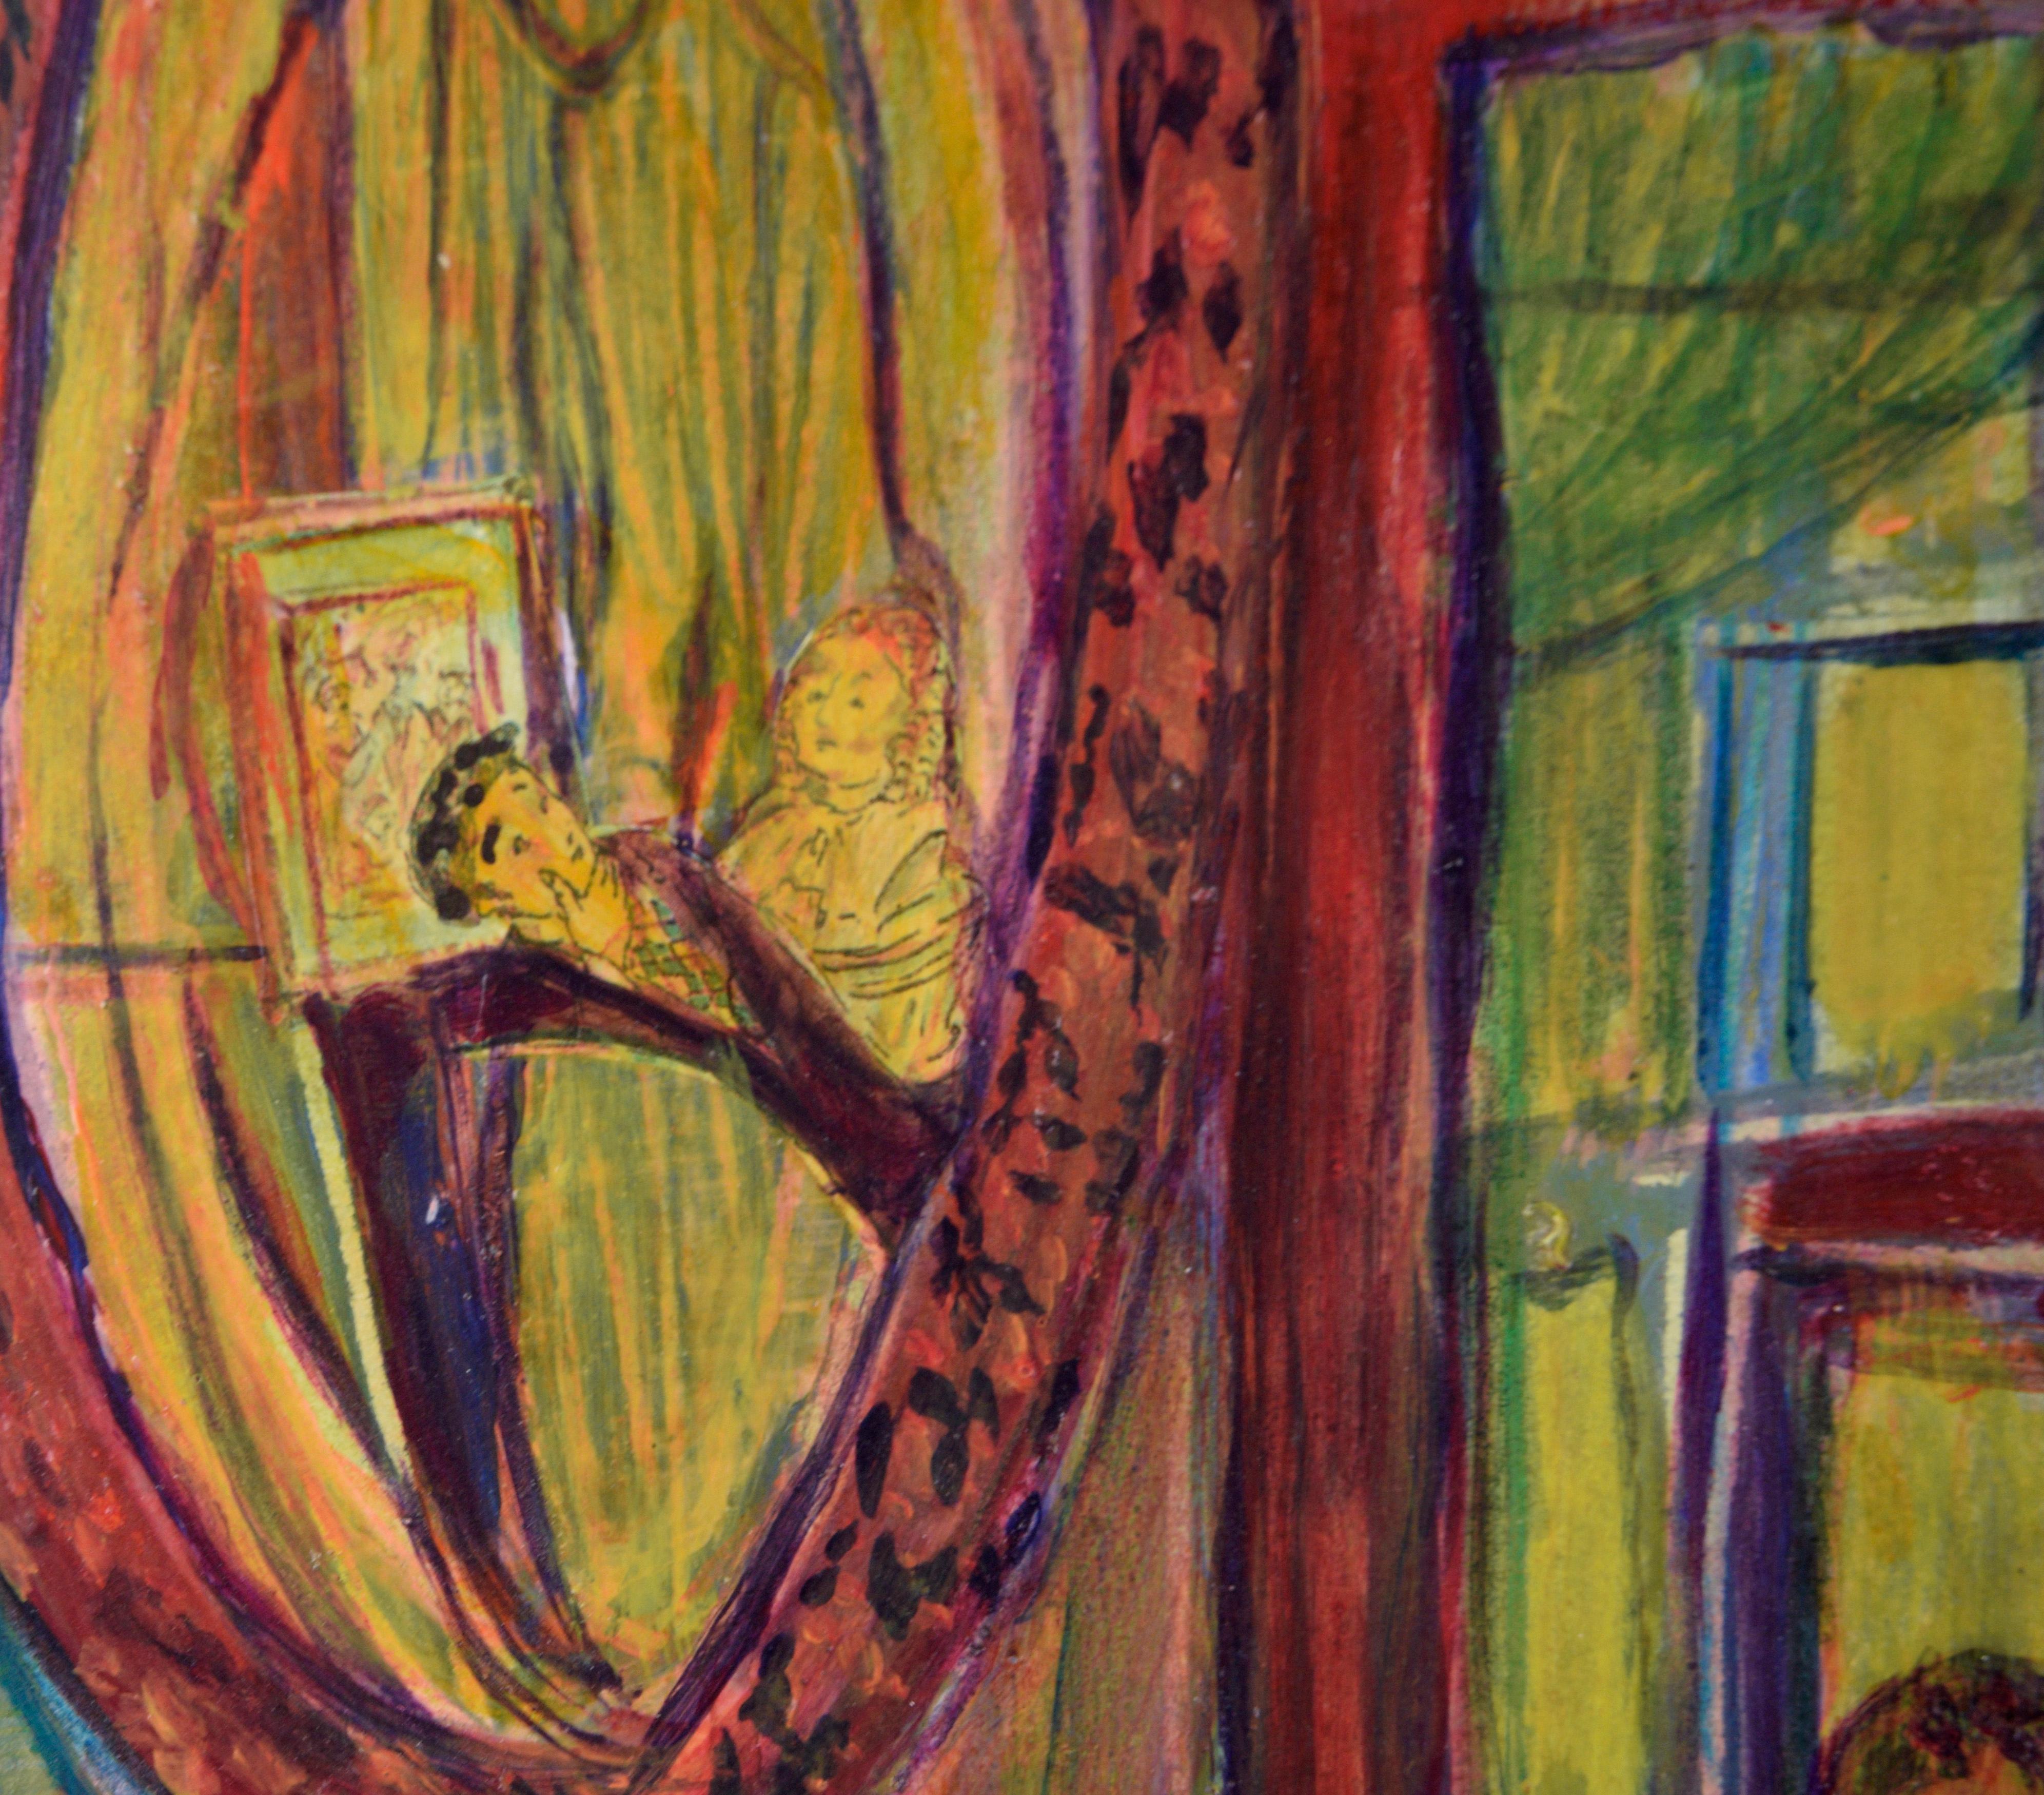 Psychedelisches abstraktes Interieur mit Spiegel in Öl auf Papier

Moody abstraktes Interieur von Jennie T. Rafton (Amerikanerin, geb. 1925). Das Innere eines Hauses wird mit einem großen runden Spiegel gezeigt. Im Spiegelbild sind zwei